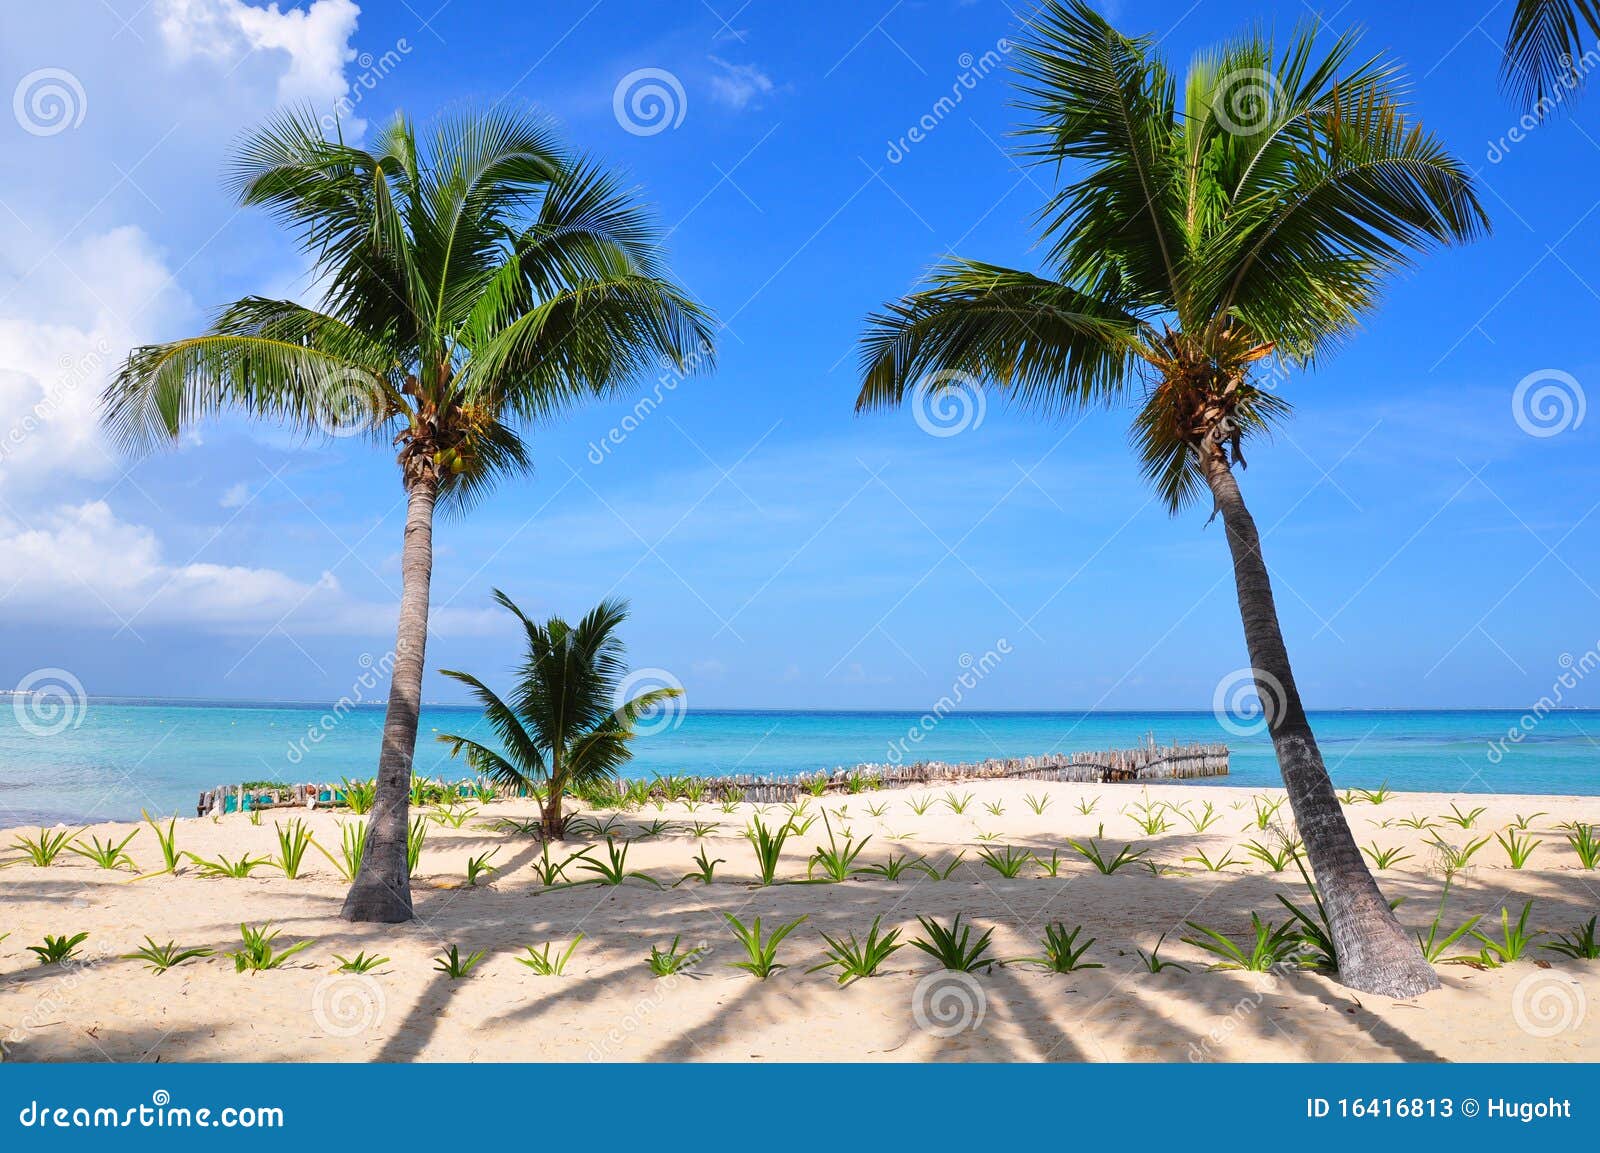 caribbean beach, mexico